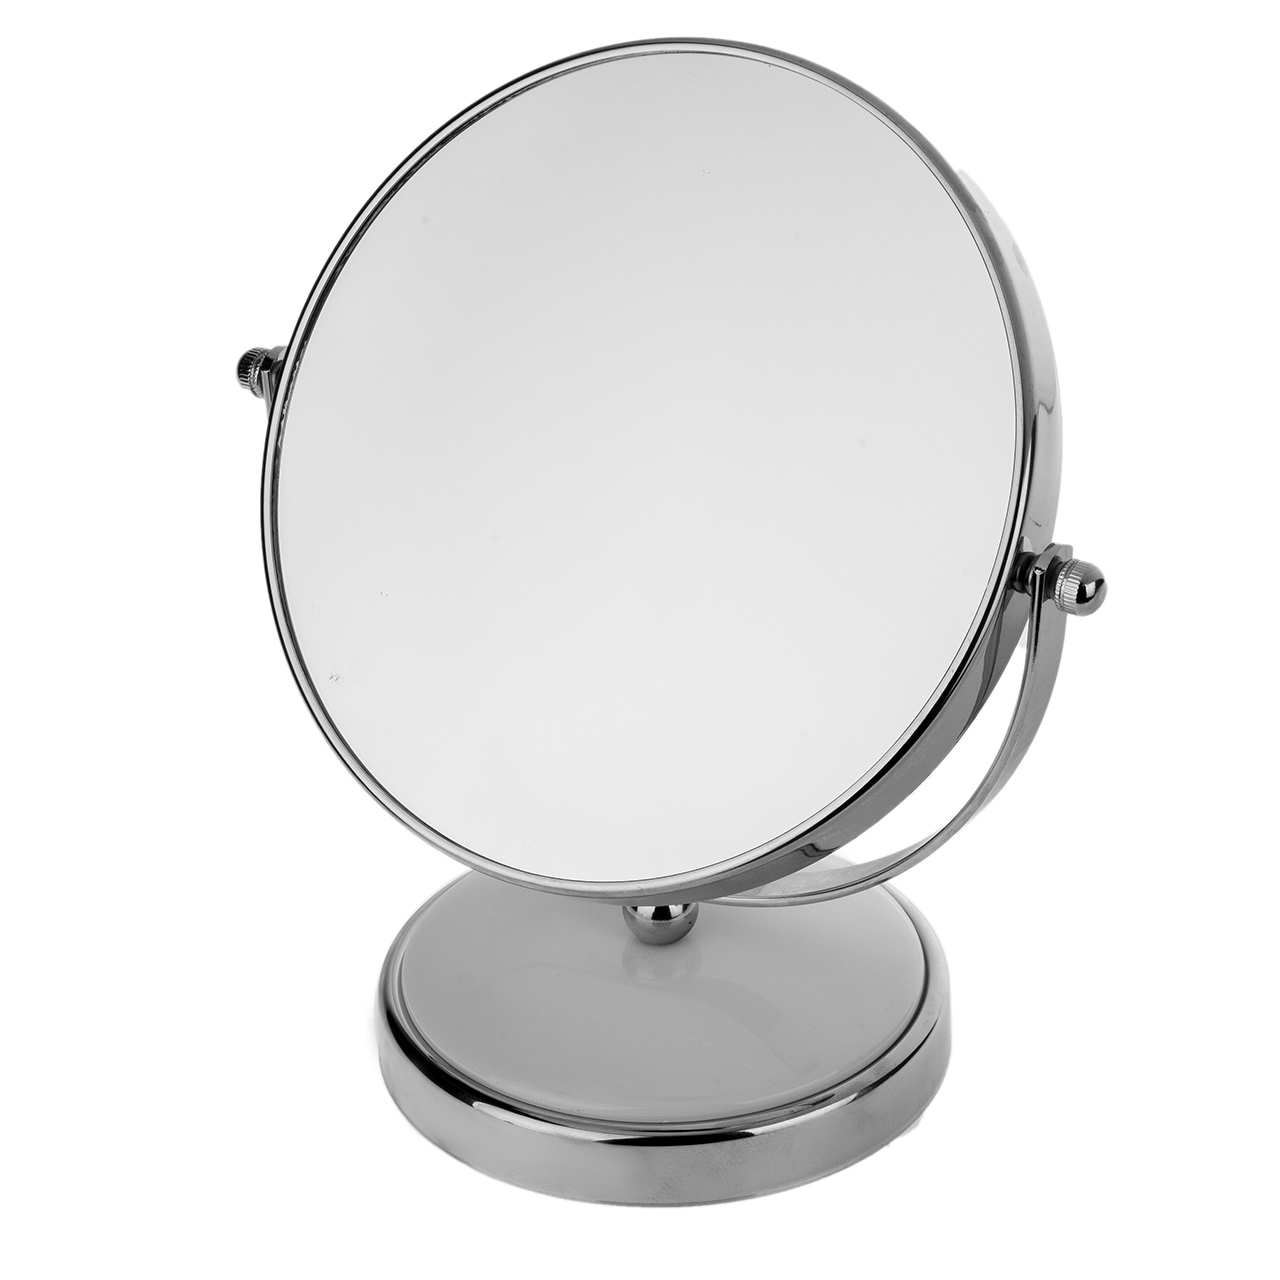 آینه آرایشی کد 524 با بزرگنمایی 5x